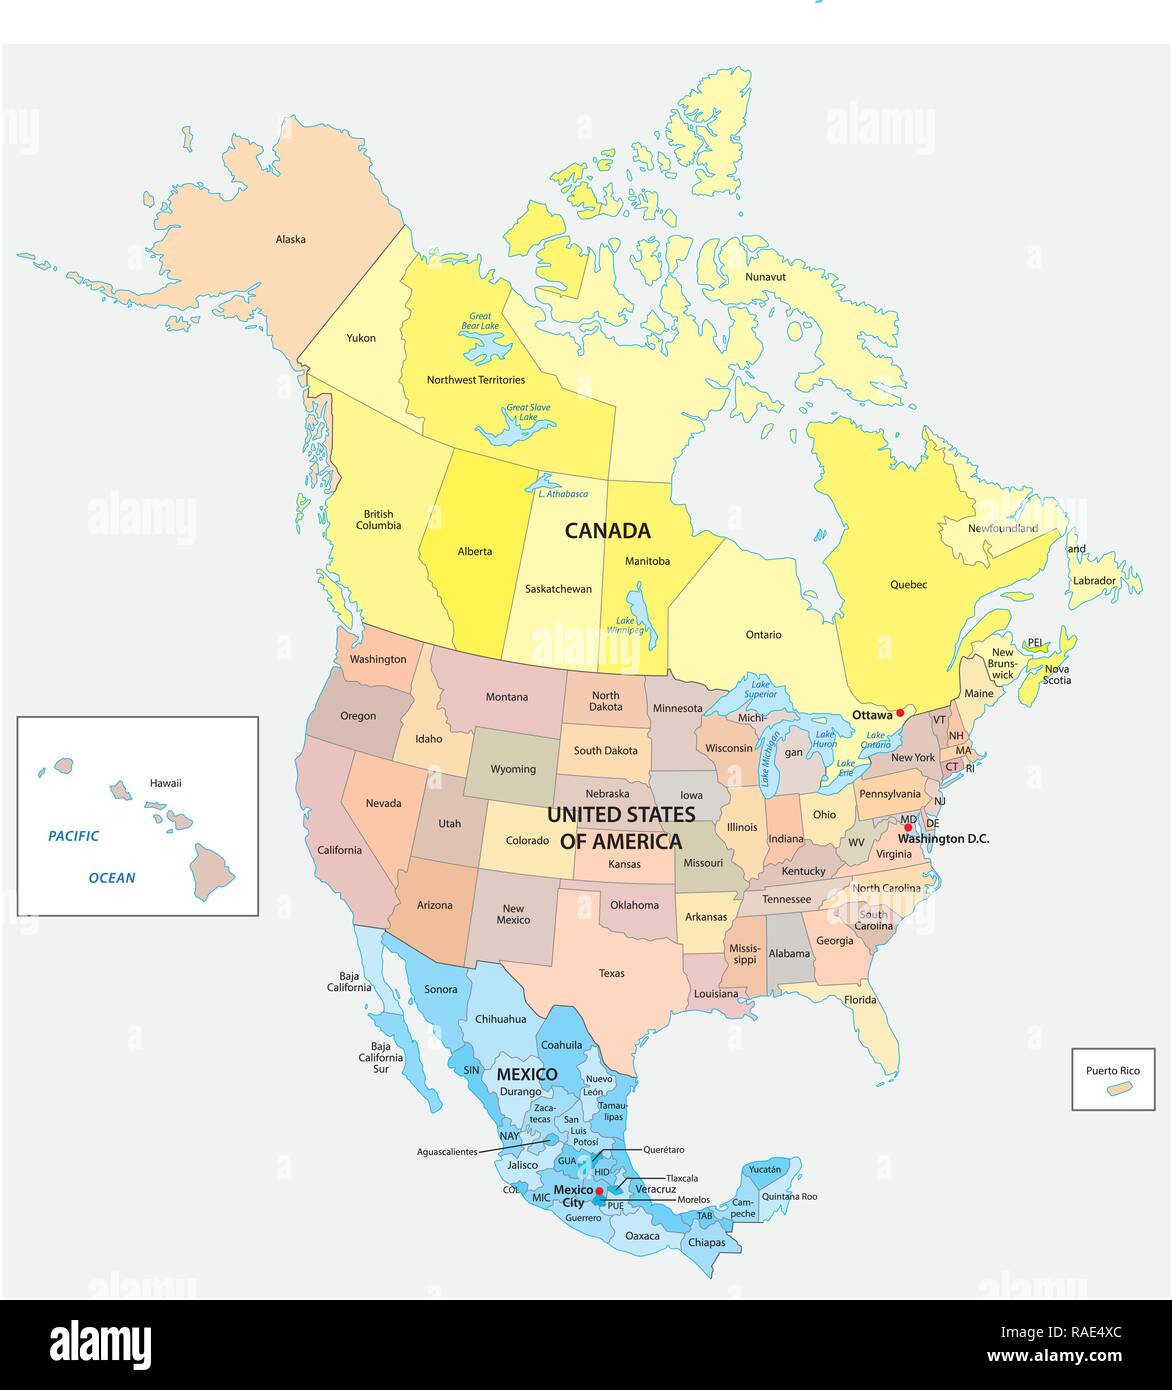 Administrative und politische Vektorkarte der drei nordamerikanischen Staaten, Mexiko, Kanada und den Vereinigten Staaten von Amerika Stock Vektor